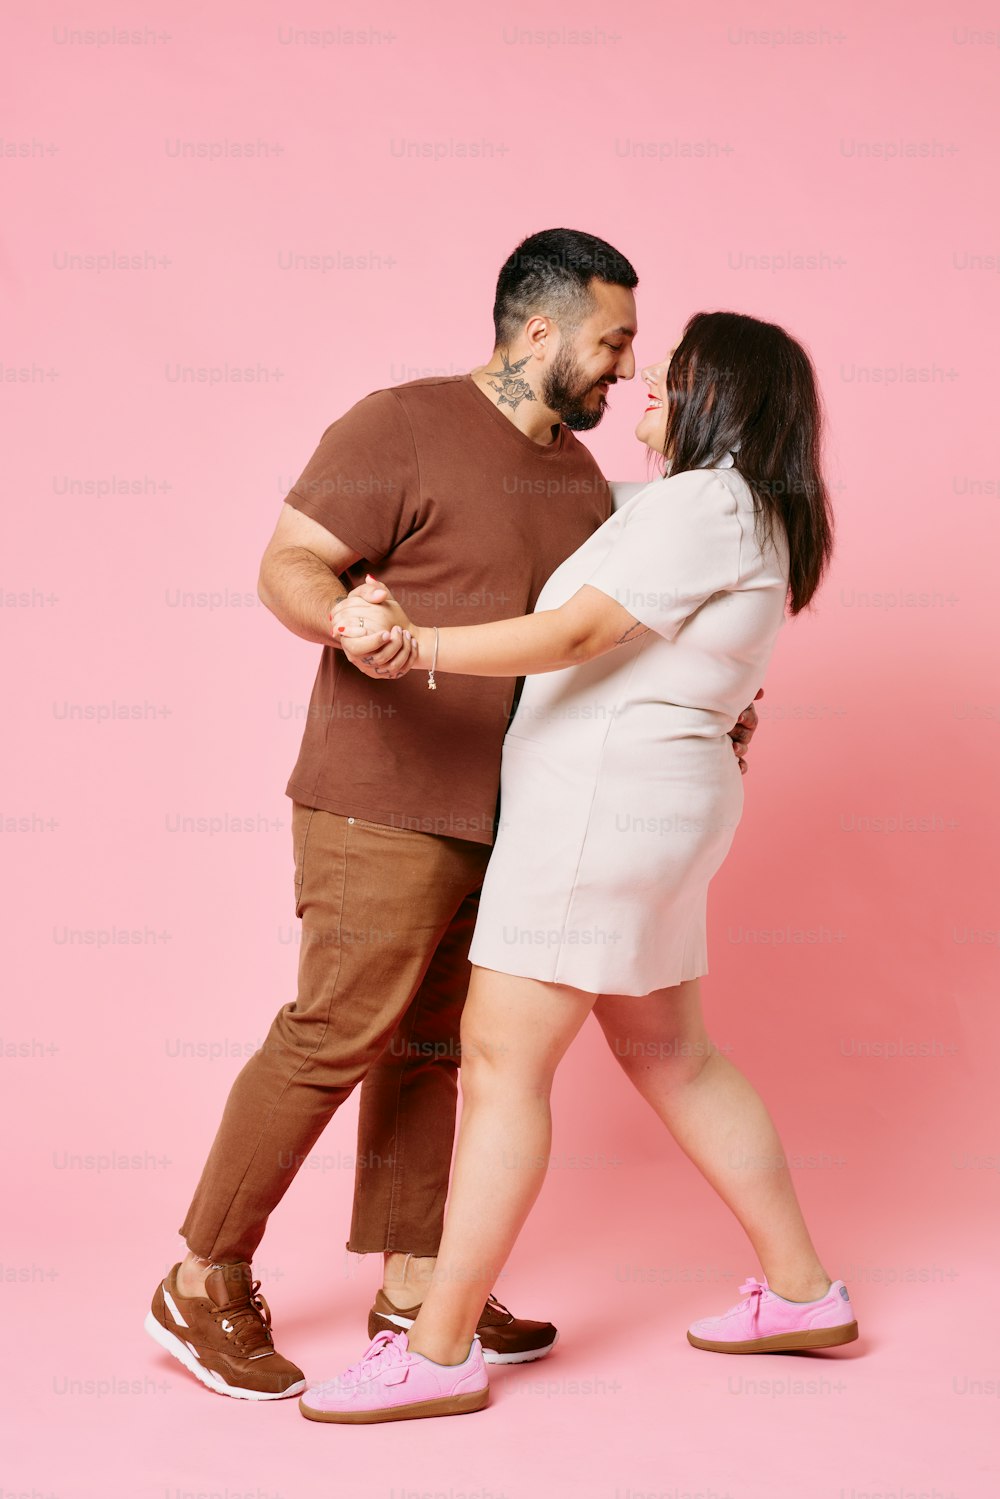 un hombre y una mujer bailando juntos sobre un fondo rosa